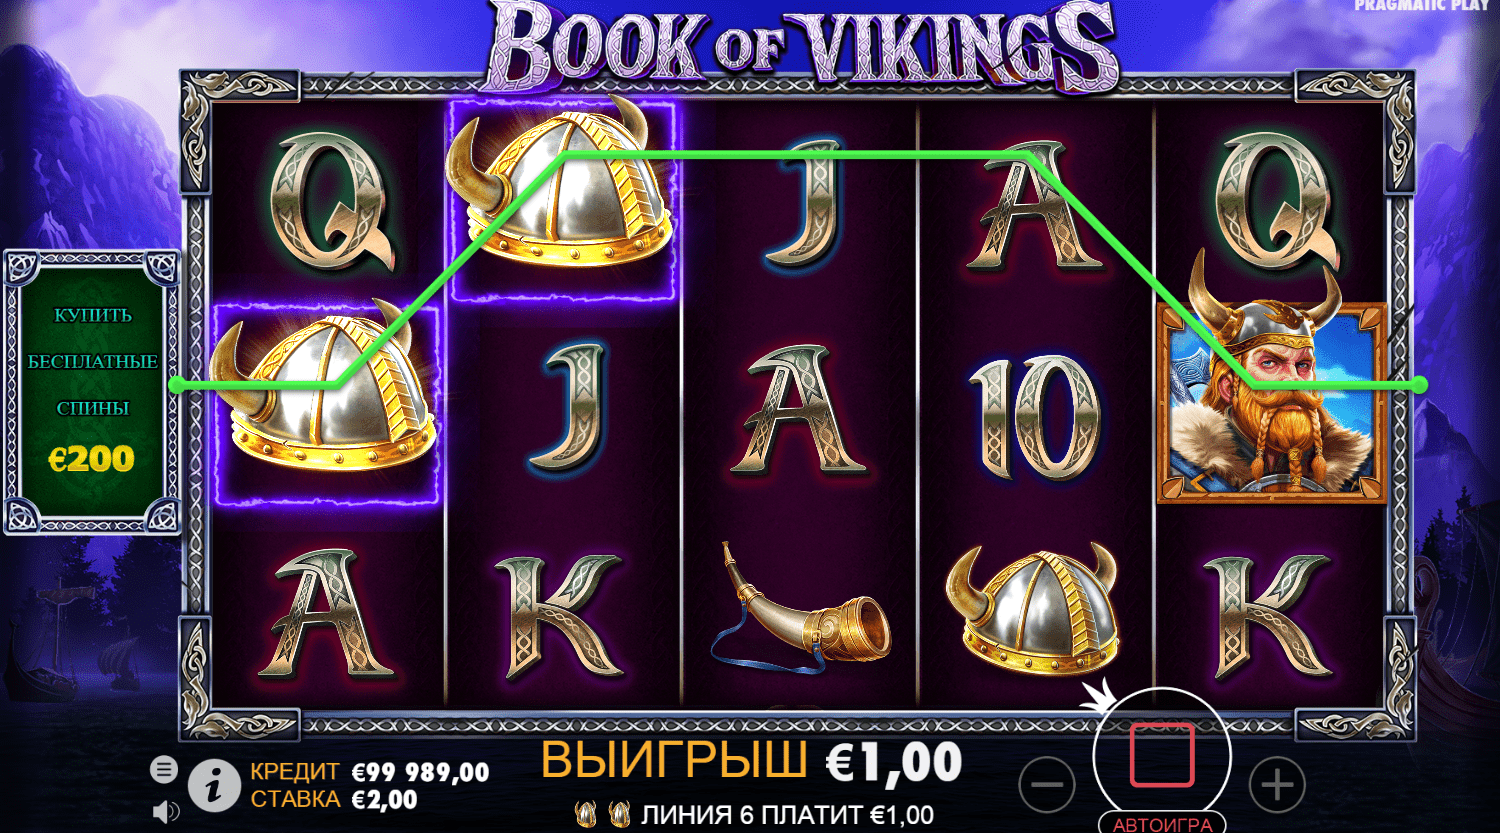 Book of Vikings jugar gratis